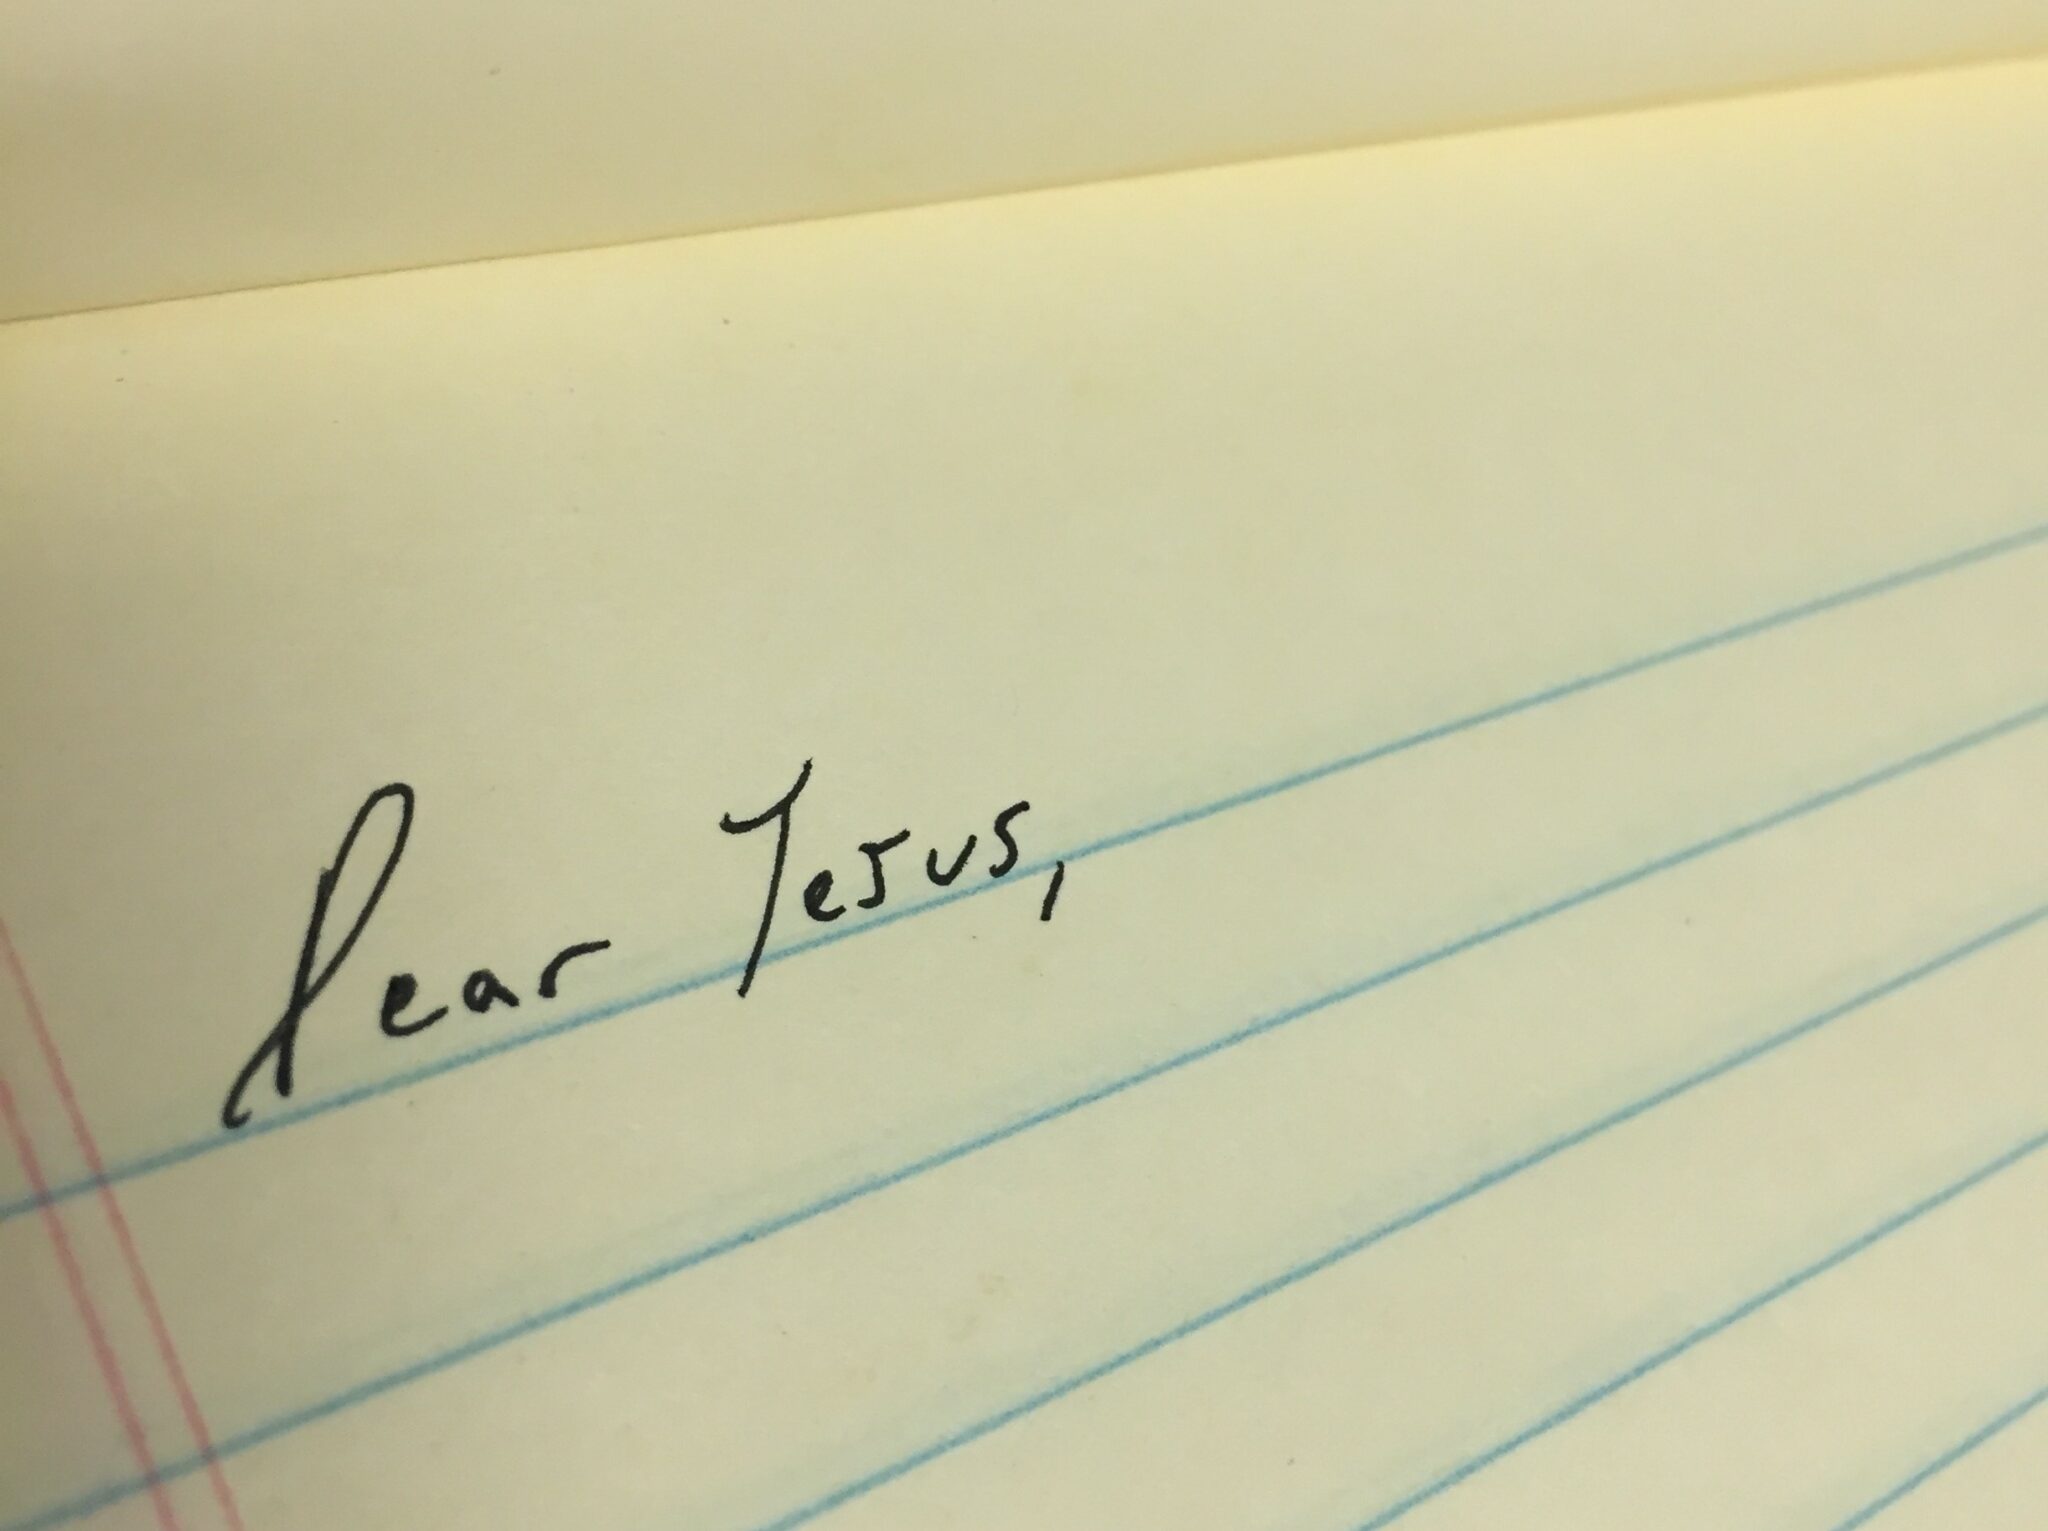 A Prisoner's Letter to Jesus